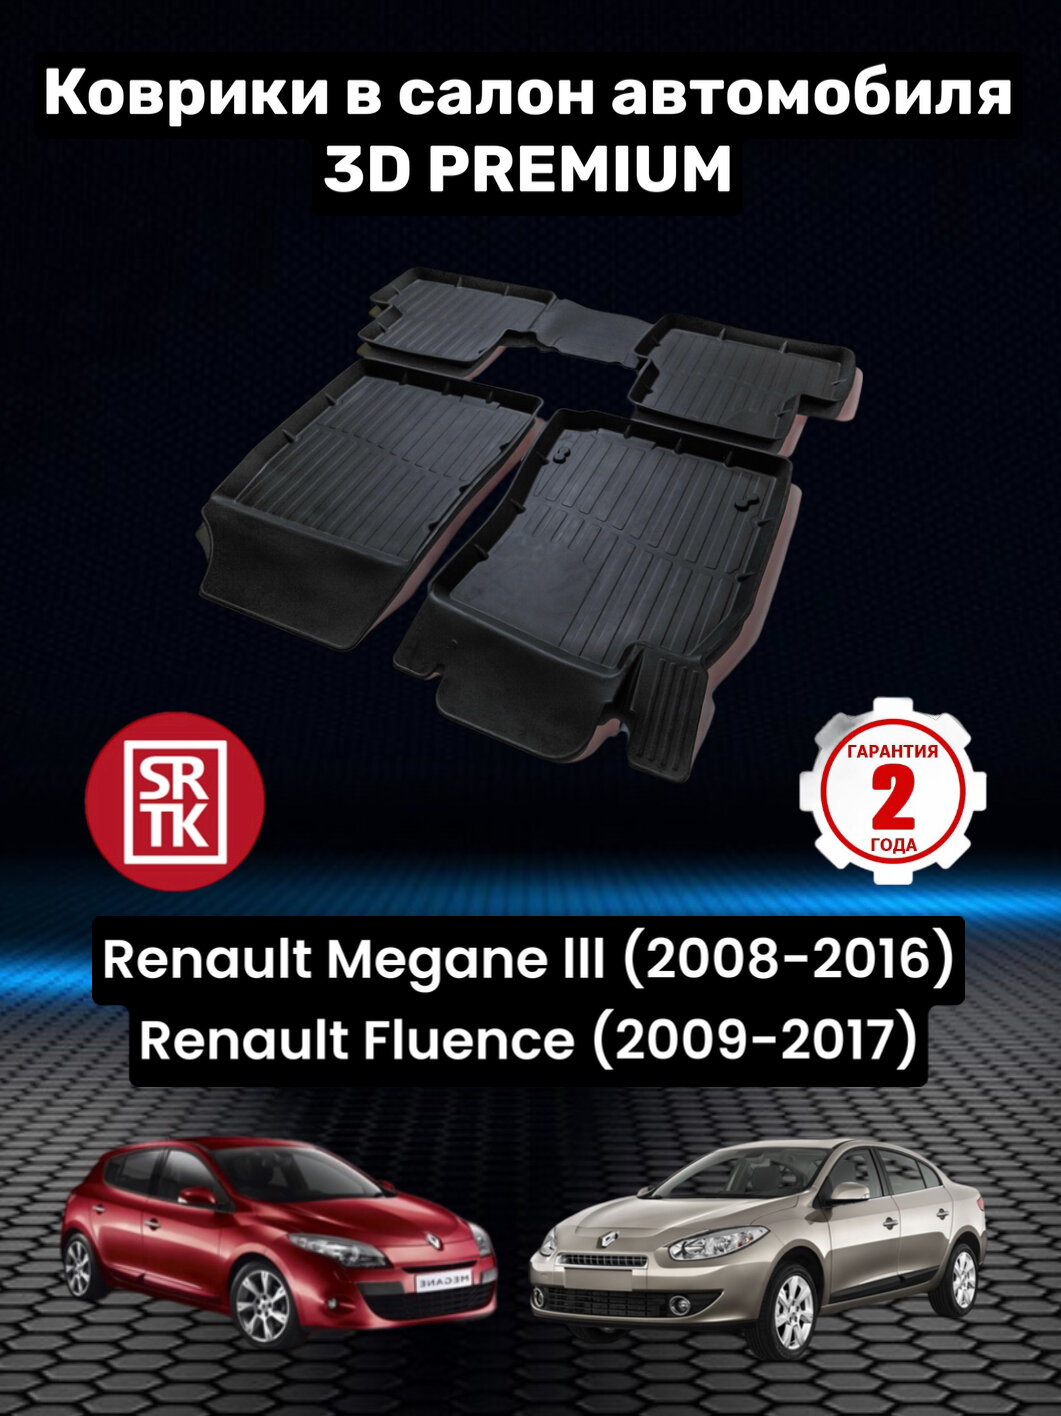 Коврики резиновые в салон для Рено Меган 3/Рено Флюенс/ Renault Fluence (2009-2017) Megane III (2008-2016) 3D PREMIUM SRTK (Саранск) комплект в салон